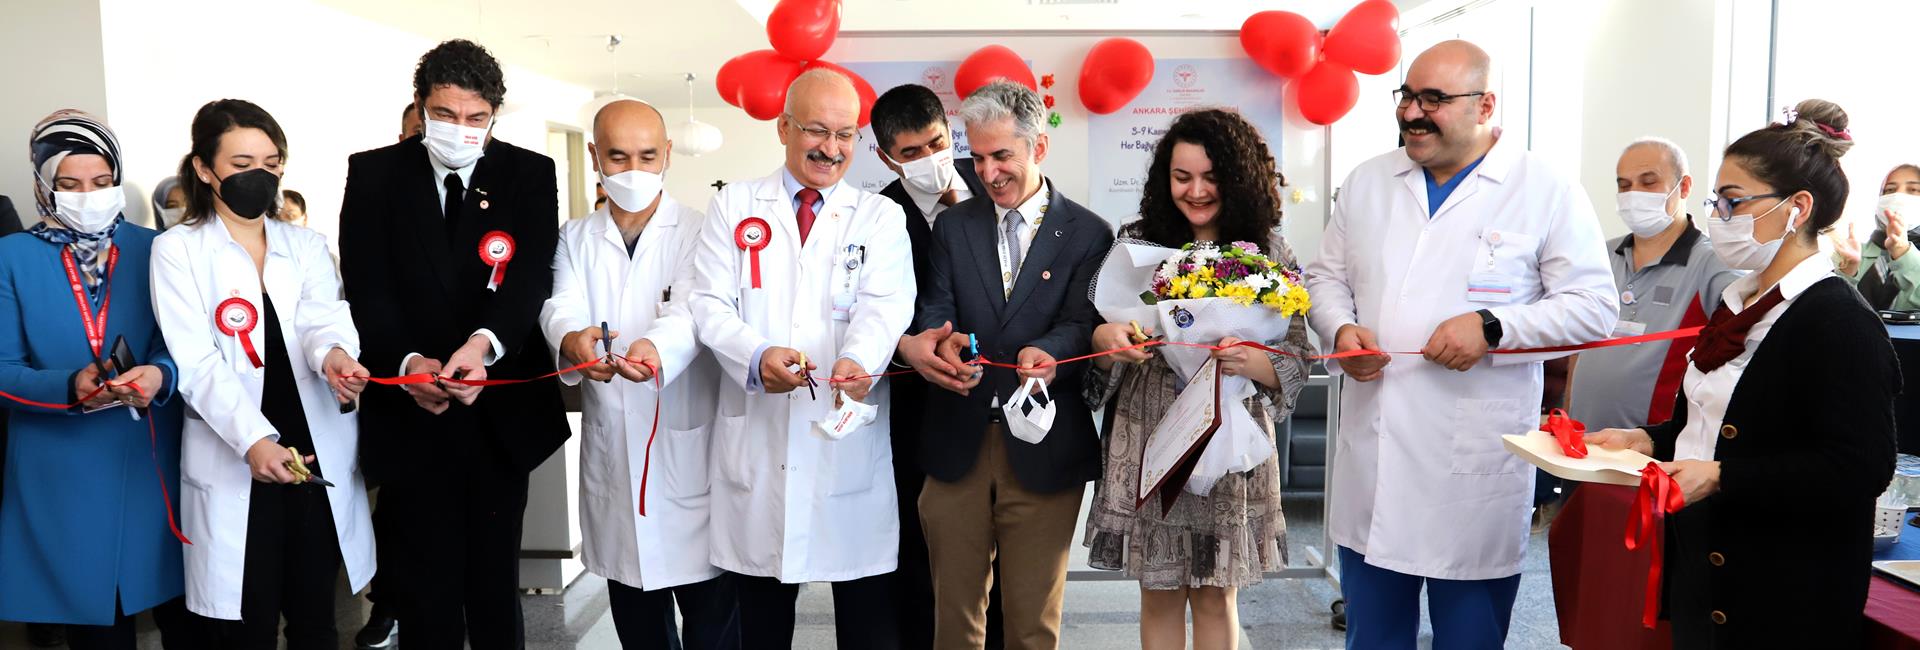 В Городской больнице Анкары состоялось мероприятие по информированию о донорстве органов и выставка картин на тему "Каждое пожертвование - это новая жизнь".